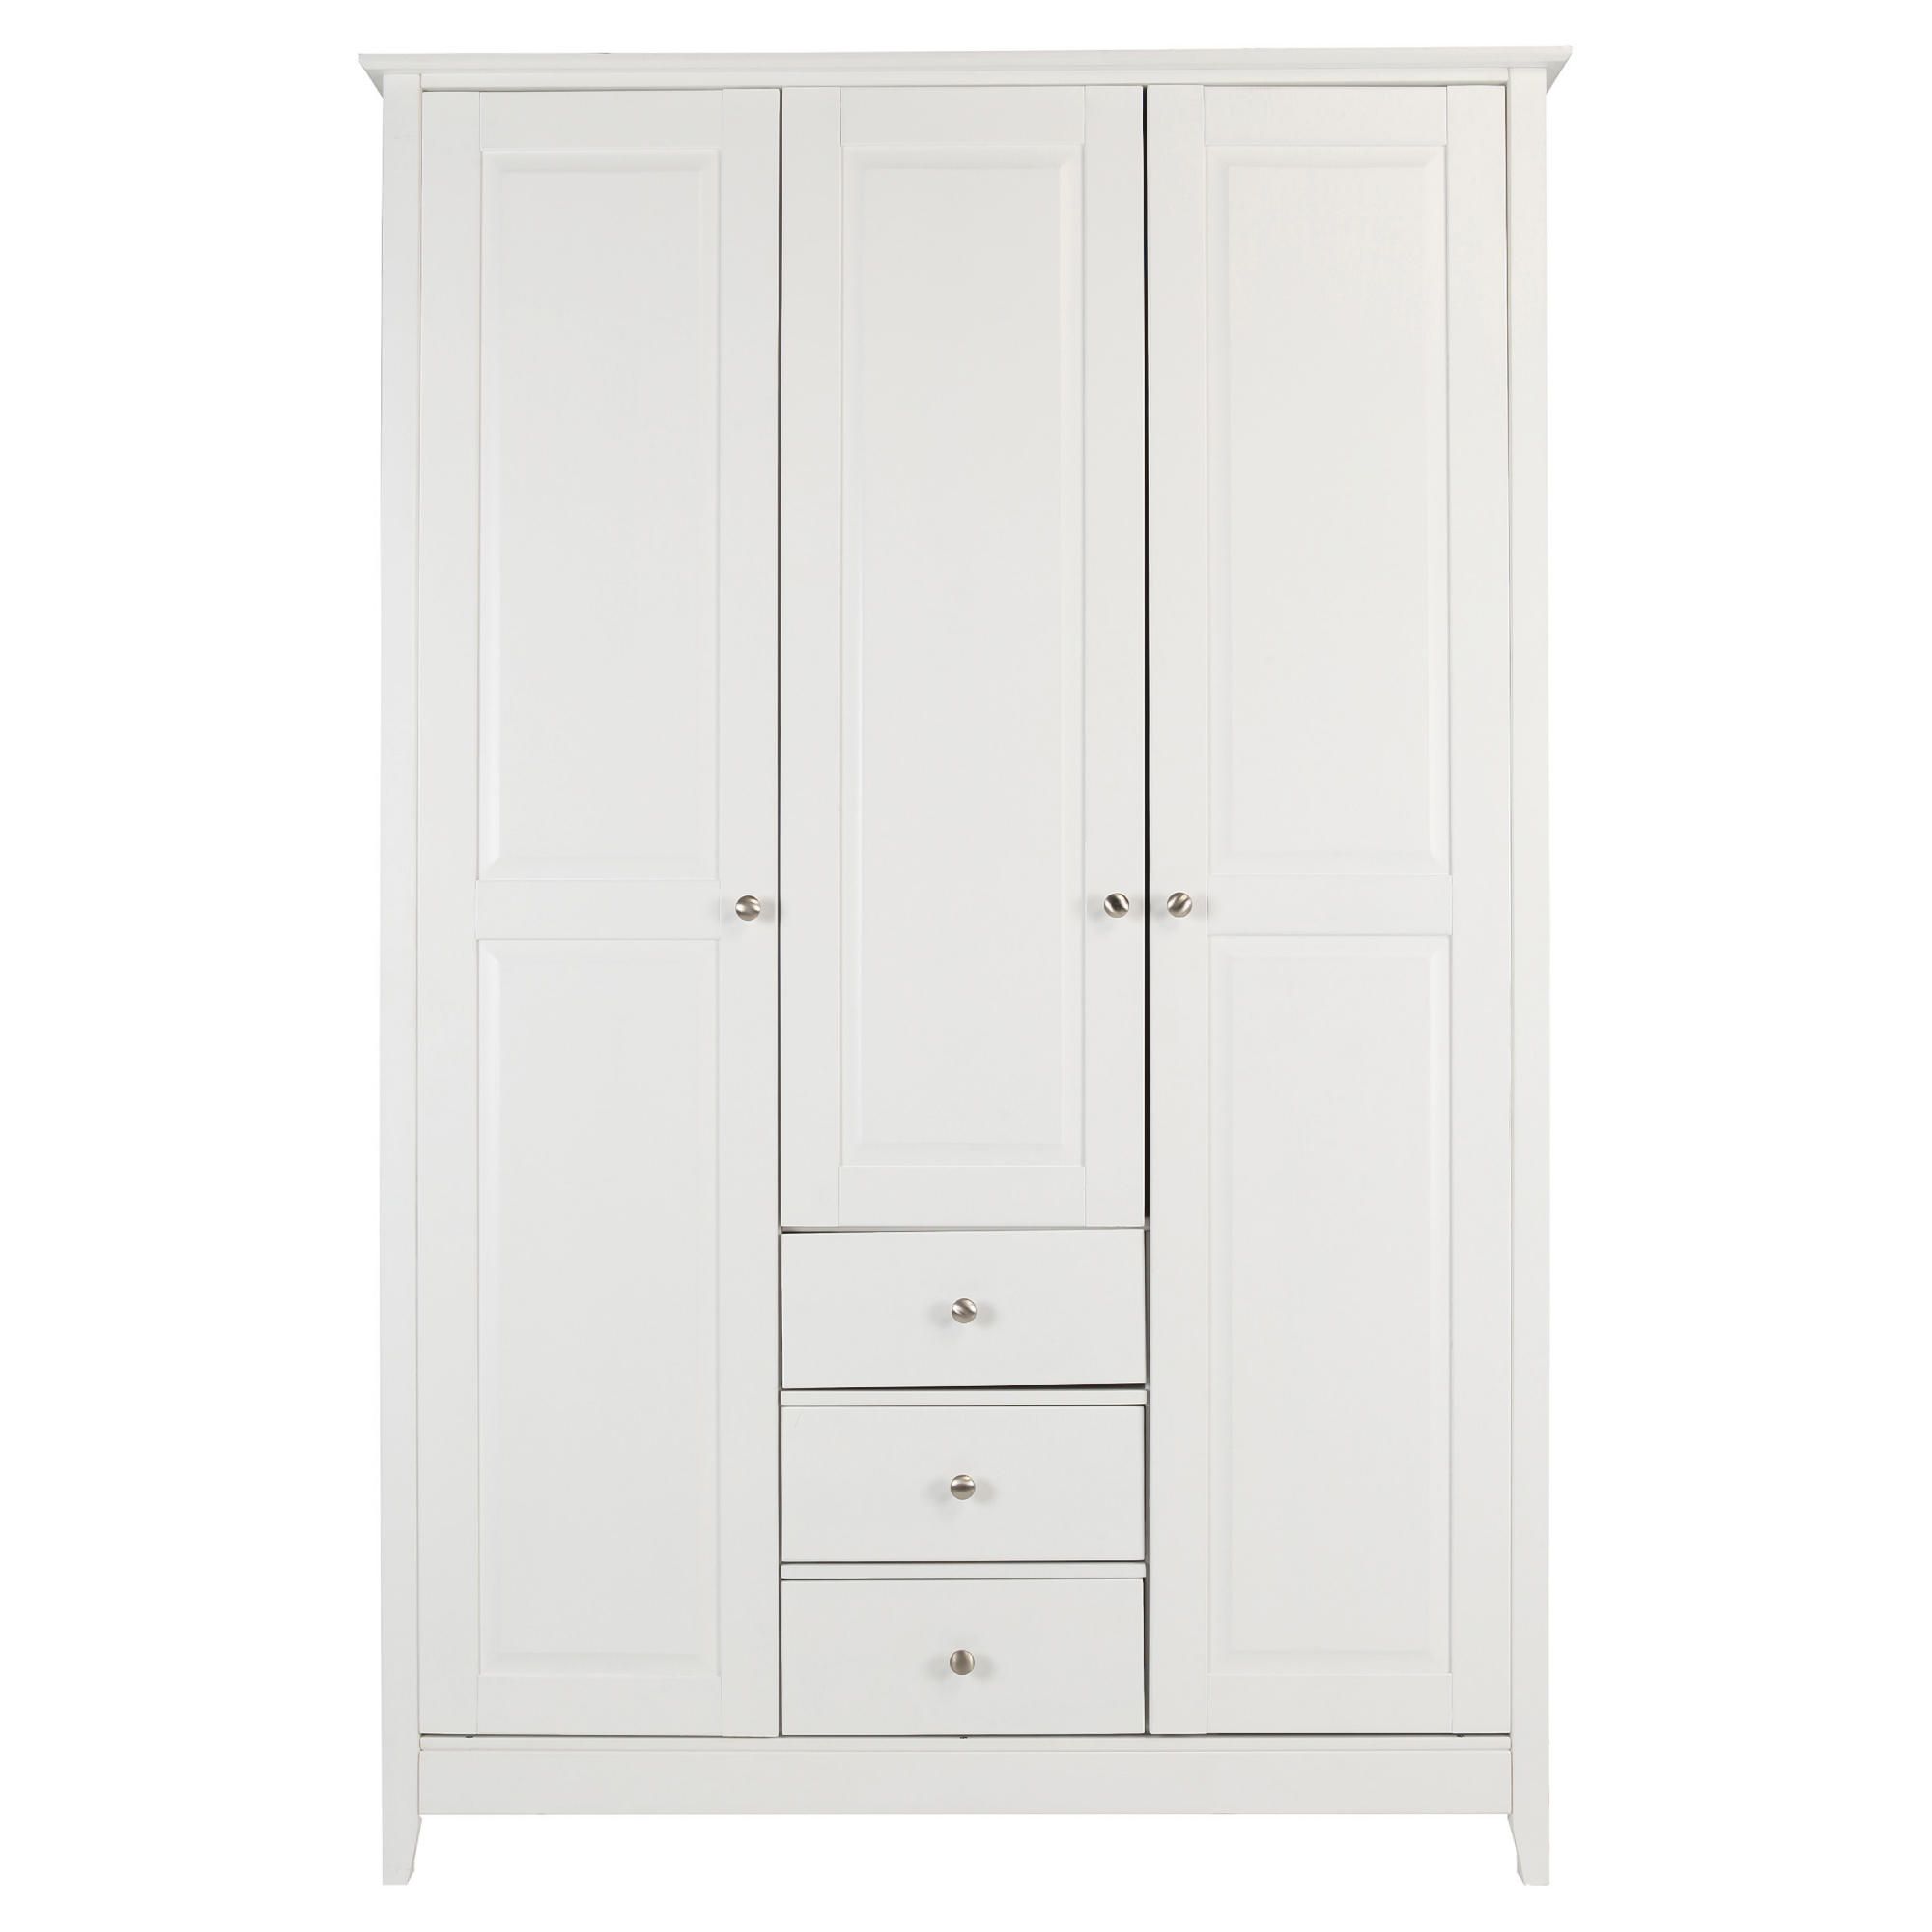 Winton 3 Door + 3 Drawer Wardrobe, White at Tesco Direct